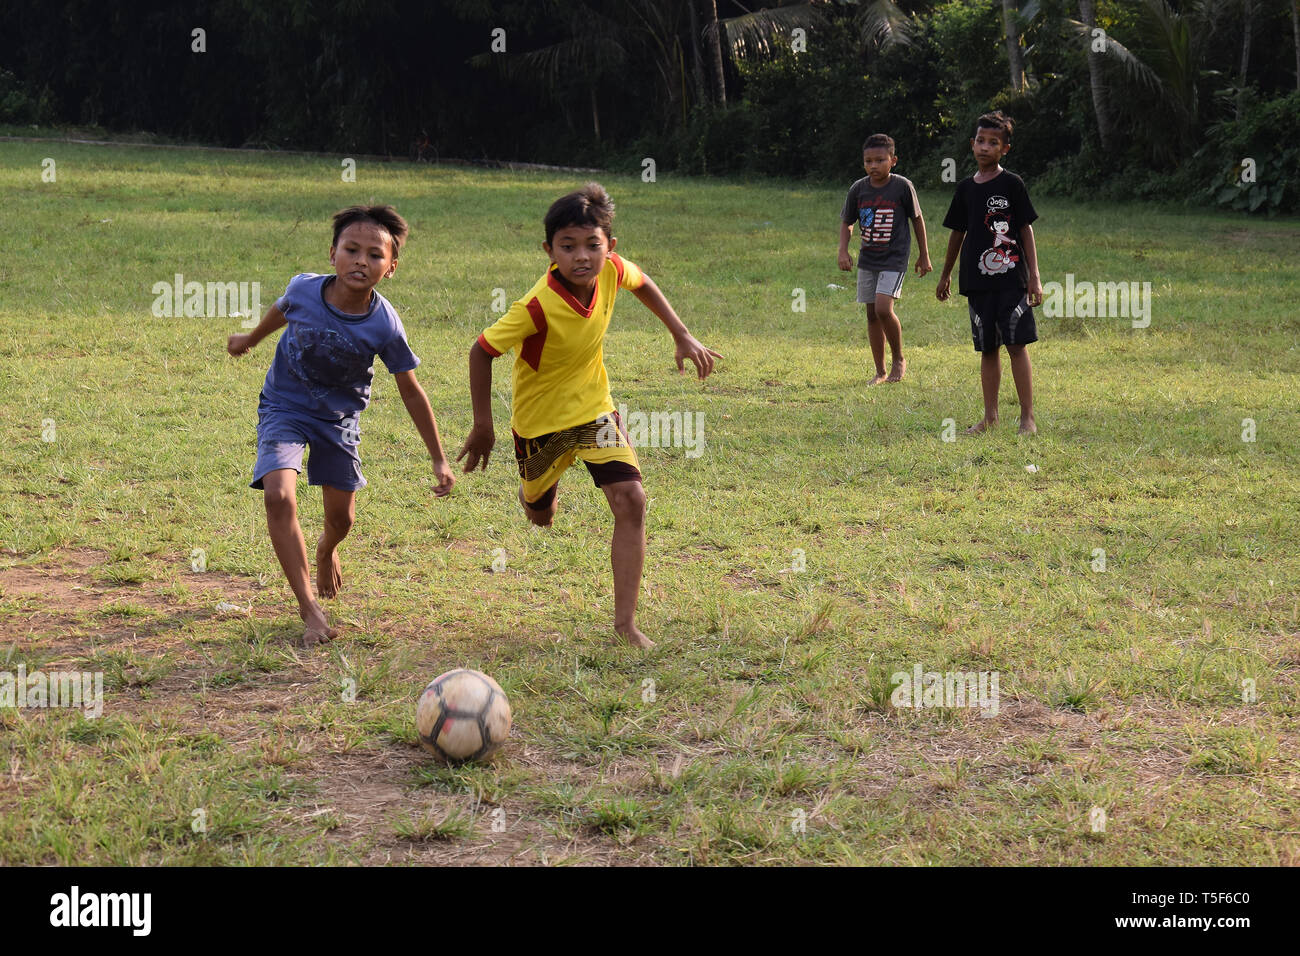 La fièvre de la Coupe du monde à des régions éloignées du pays, village enfants vraiment profiter de jouer au football avec leurs amis Banque D'Images